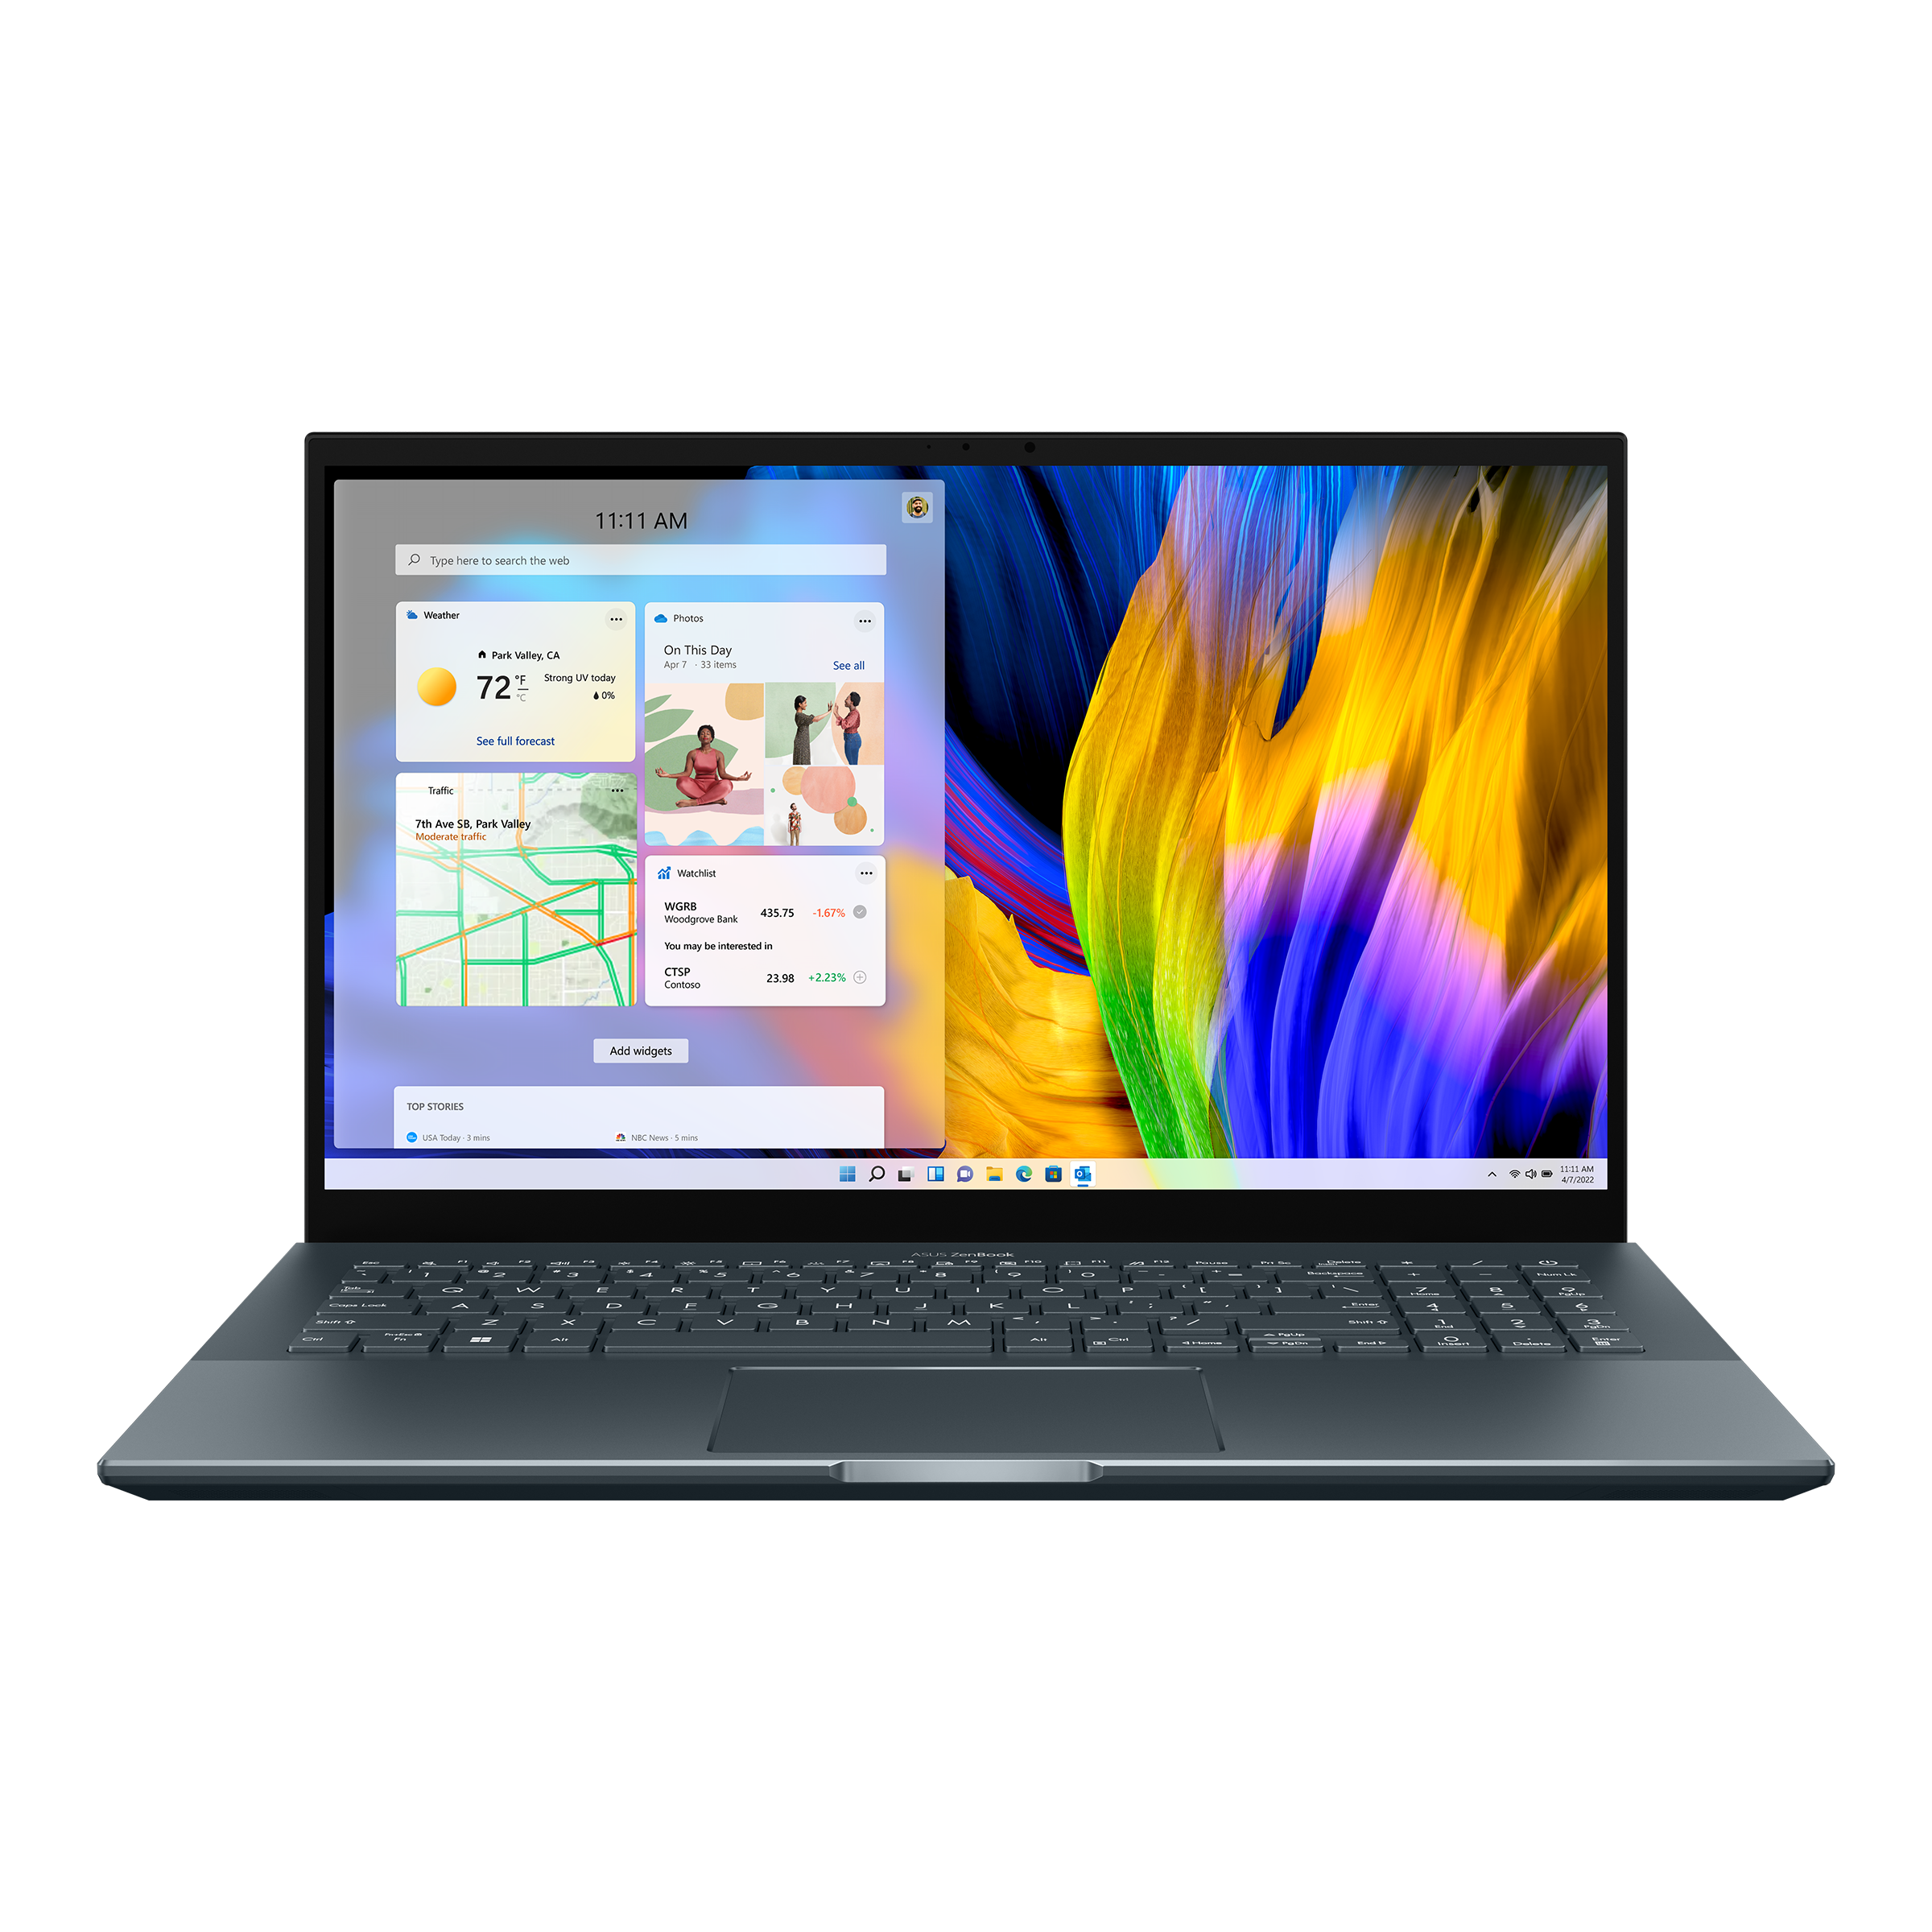 Zenbook Pro 15 OLED (UM535, AMD Ryzen 5000 Series) - Online store 